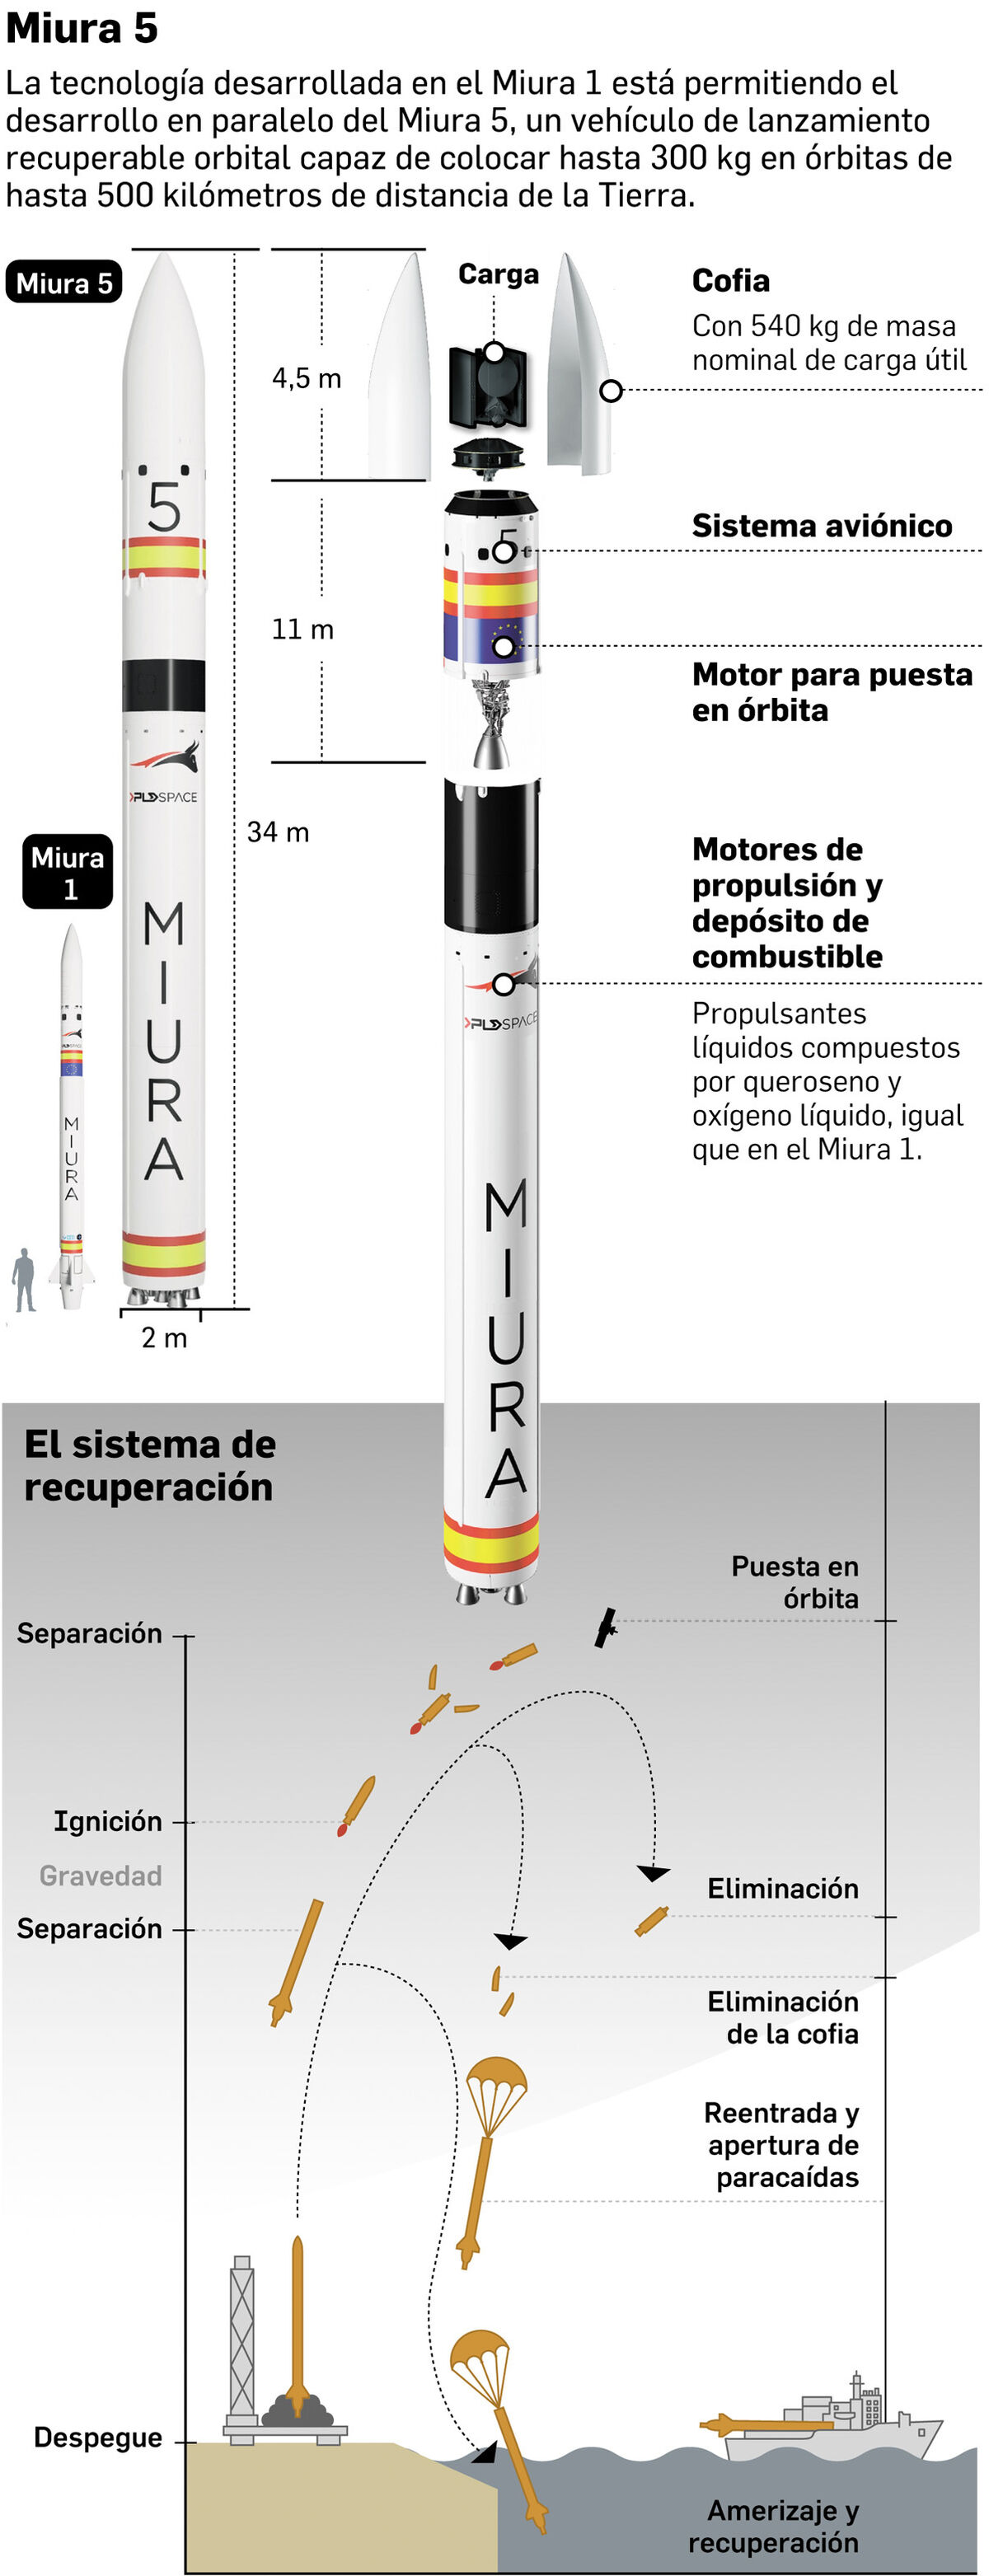 El cohete Miura 1 volará en las próximas horas desde Huelva - Miércoles, 31 de Mayo — 06:30 Caracteristicas-Miura-Fuente-PLD-Space_1794430783_184781400_1200x3127